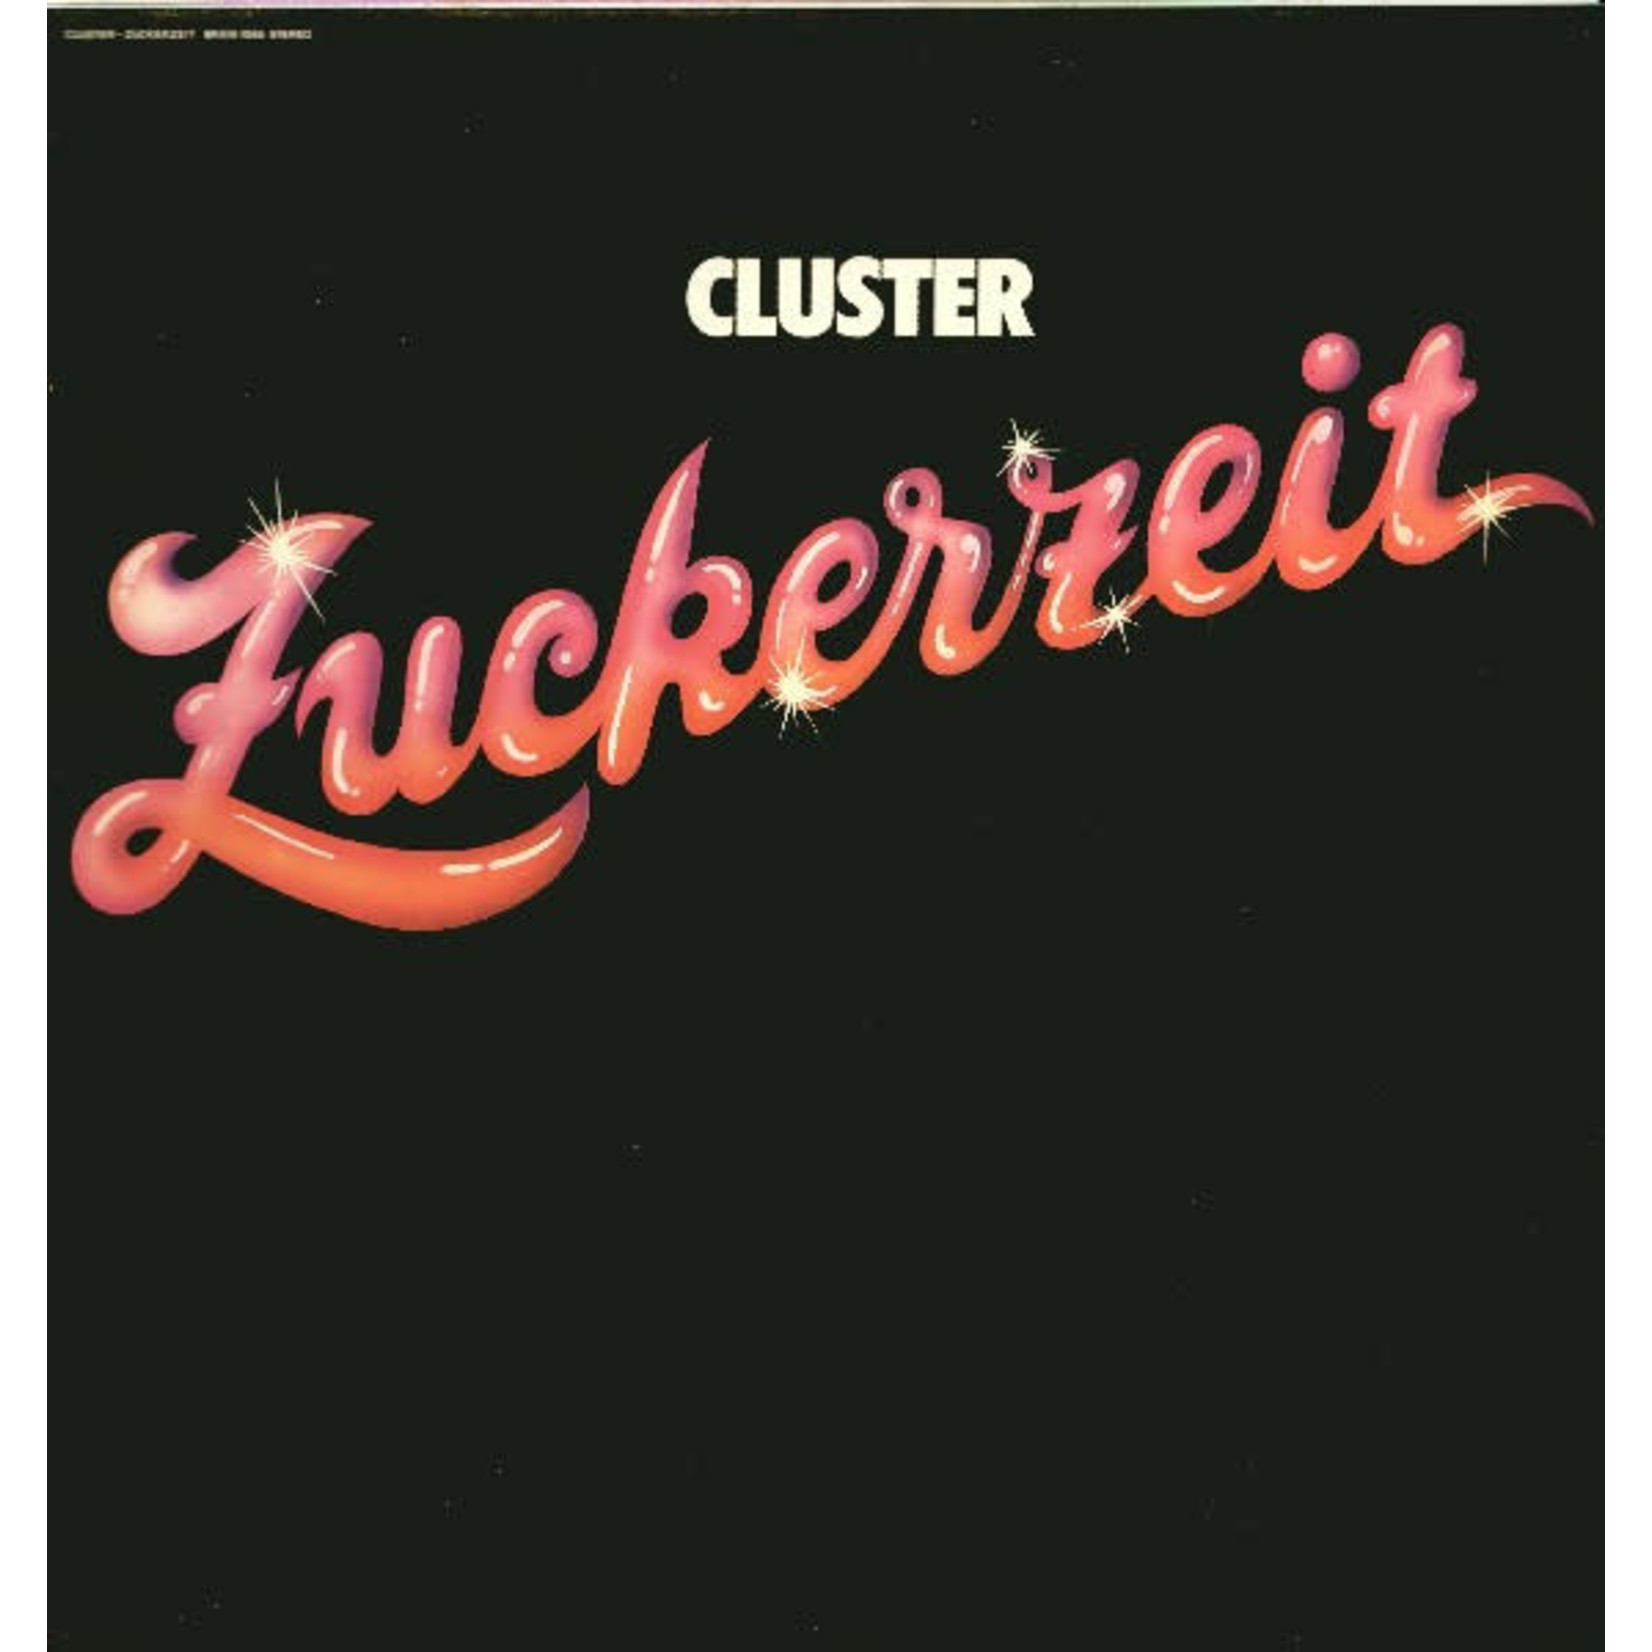 [New] Cluster - Zuckerzeit